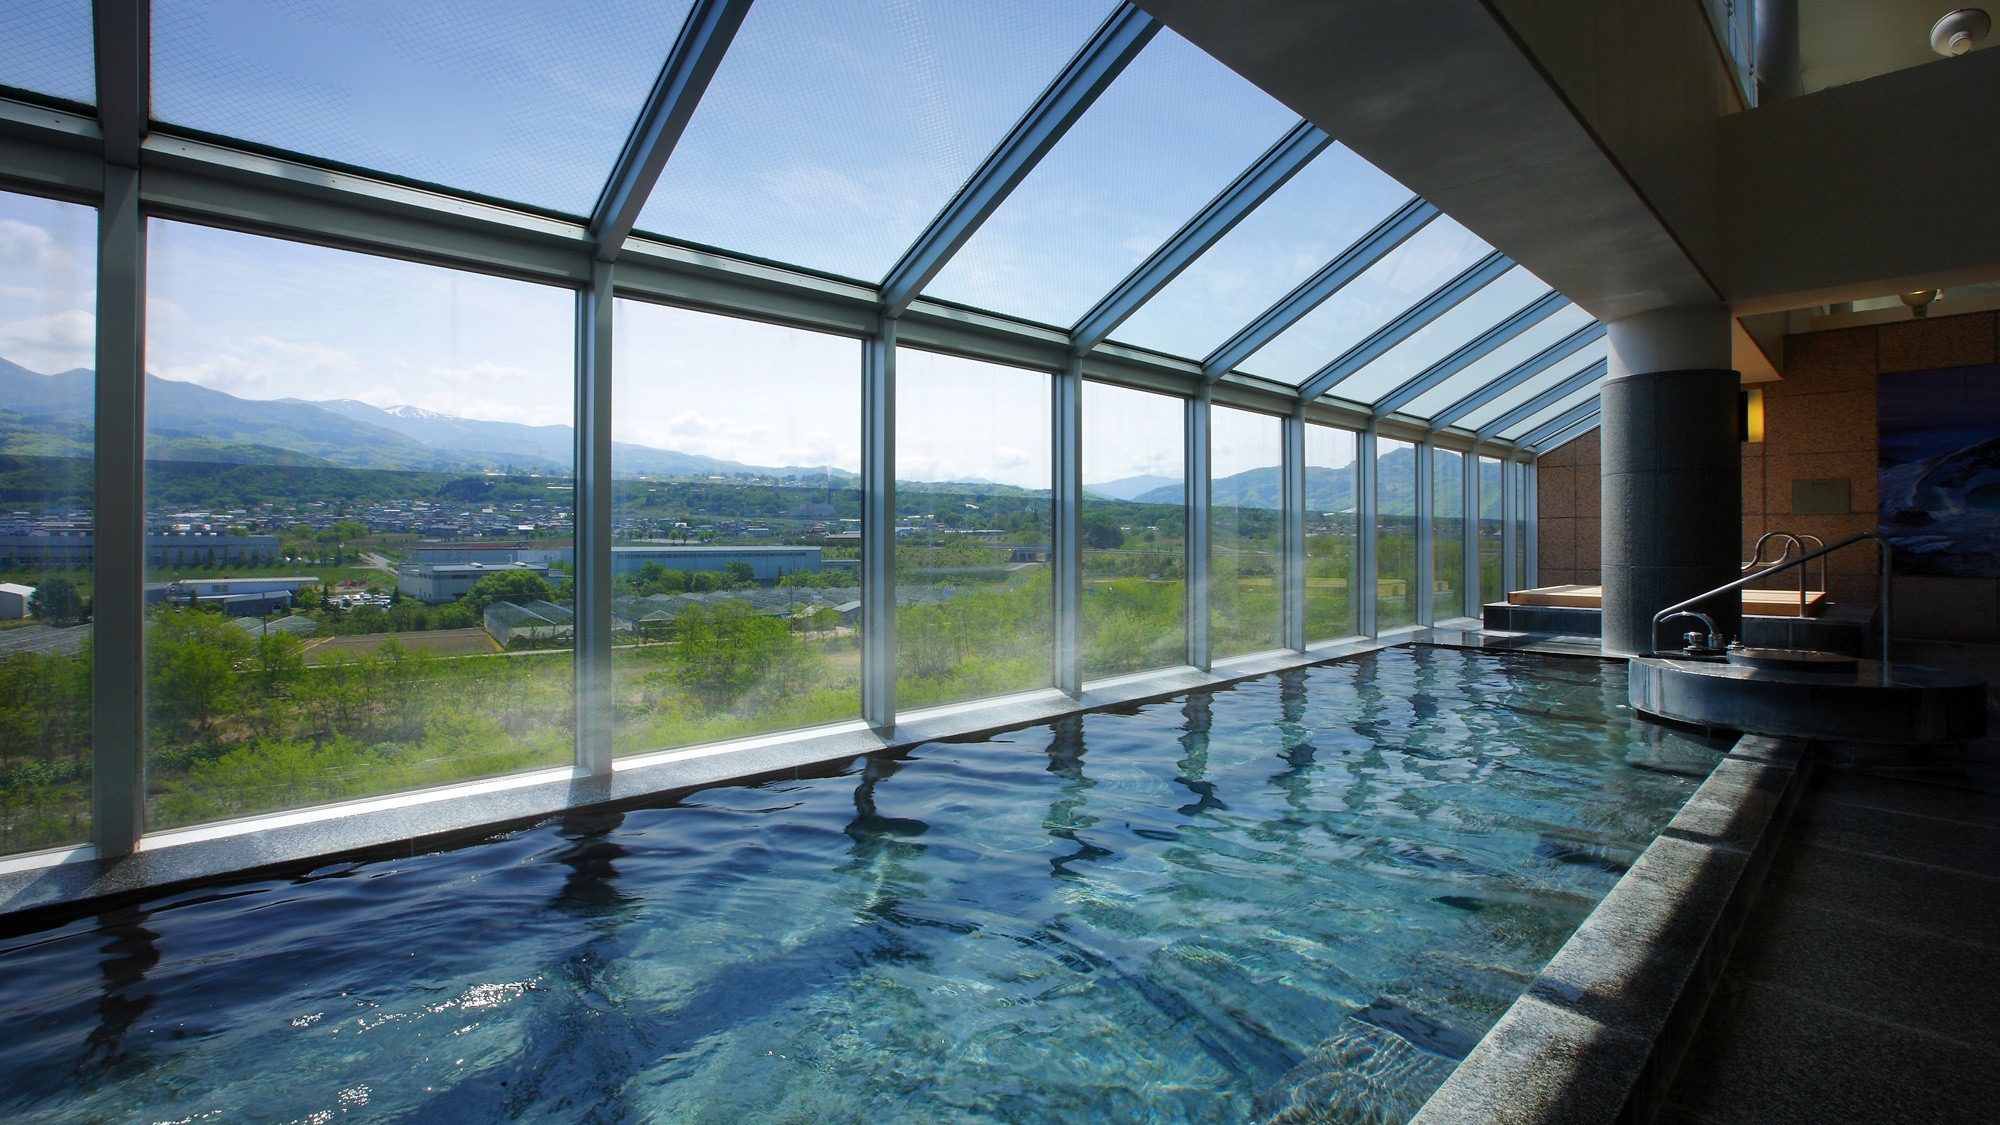 [大浴場] 頂樓寬敞的大浴場。透過玻璃可以看到藏王聯邦和山形的壯麗景色。